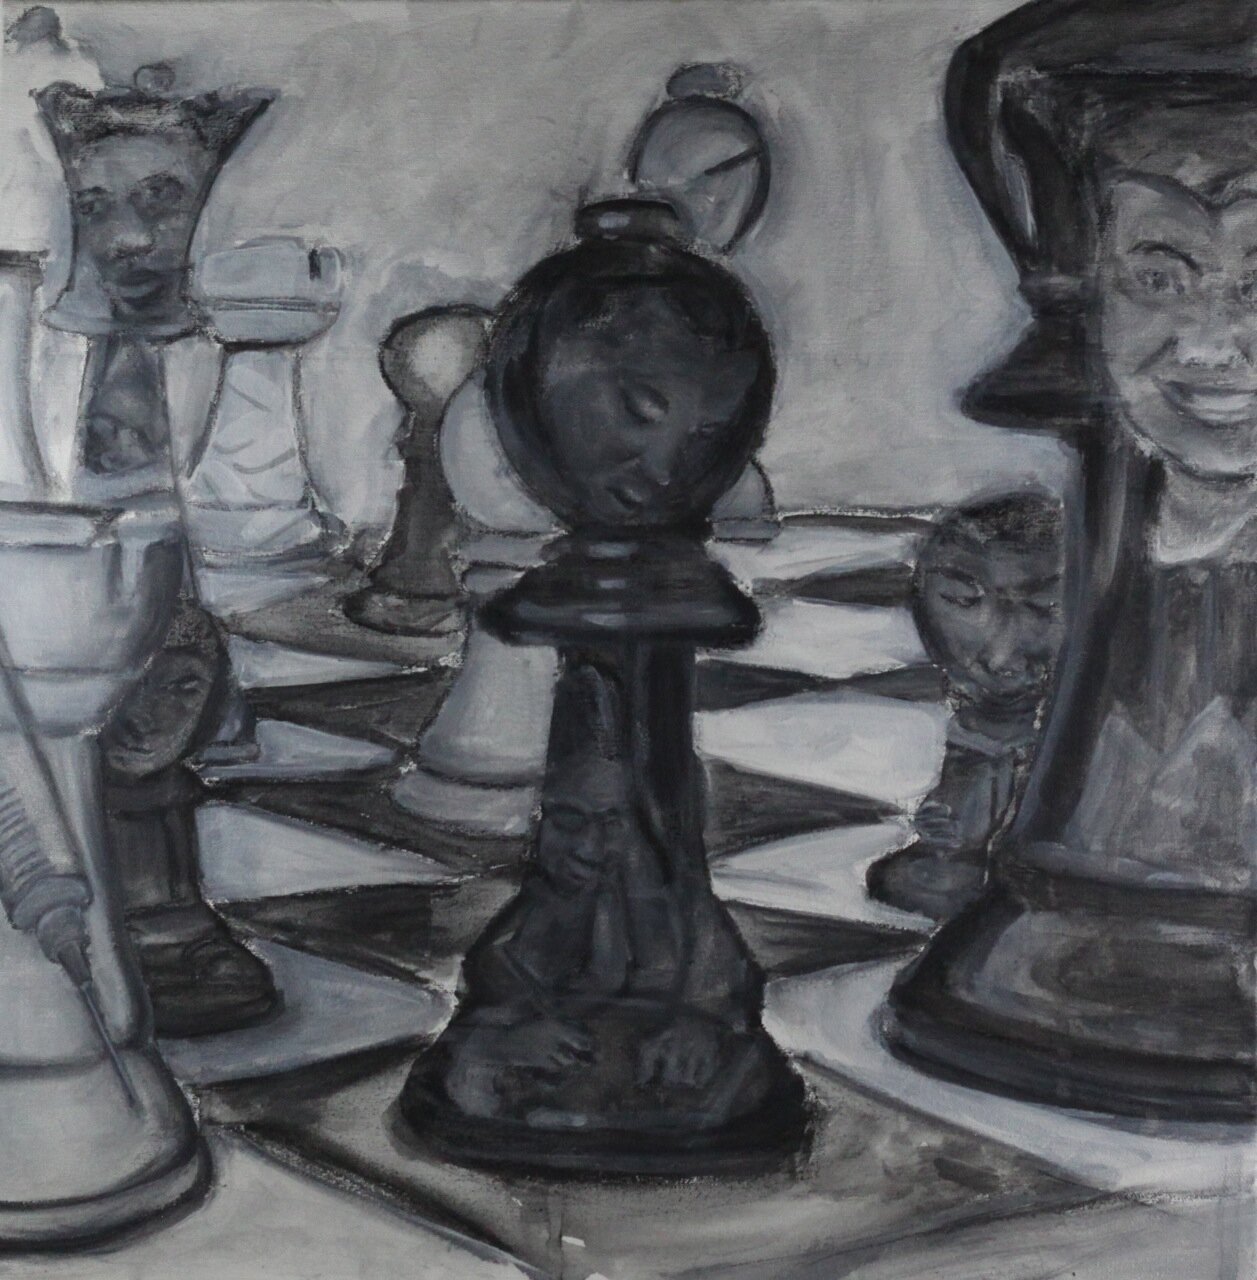 Chess, Acrylic on canvas, 20" x 20"